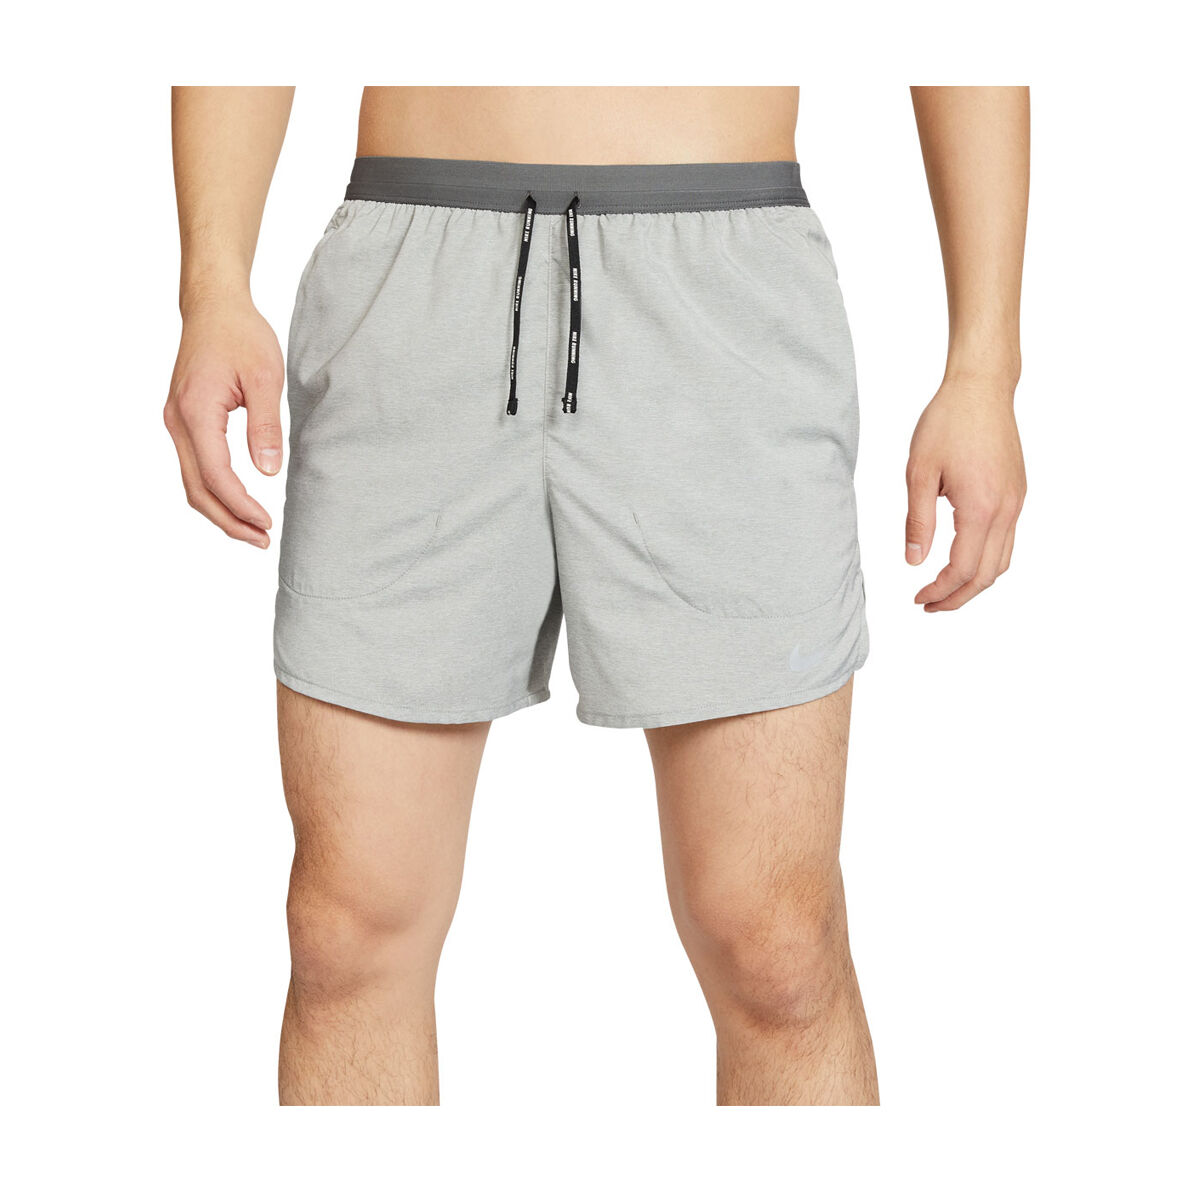 mens 5 inch running shorts